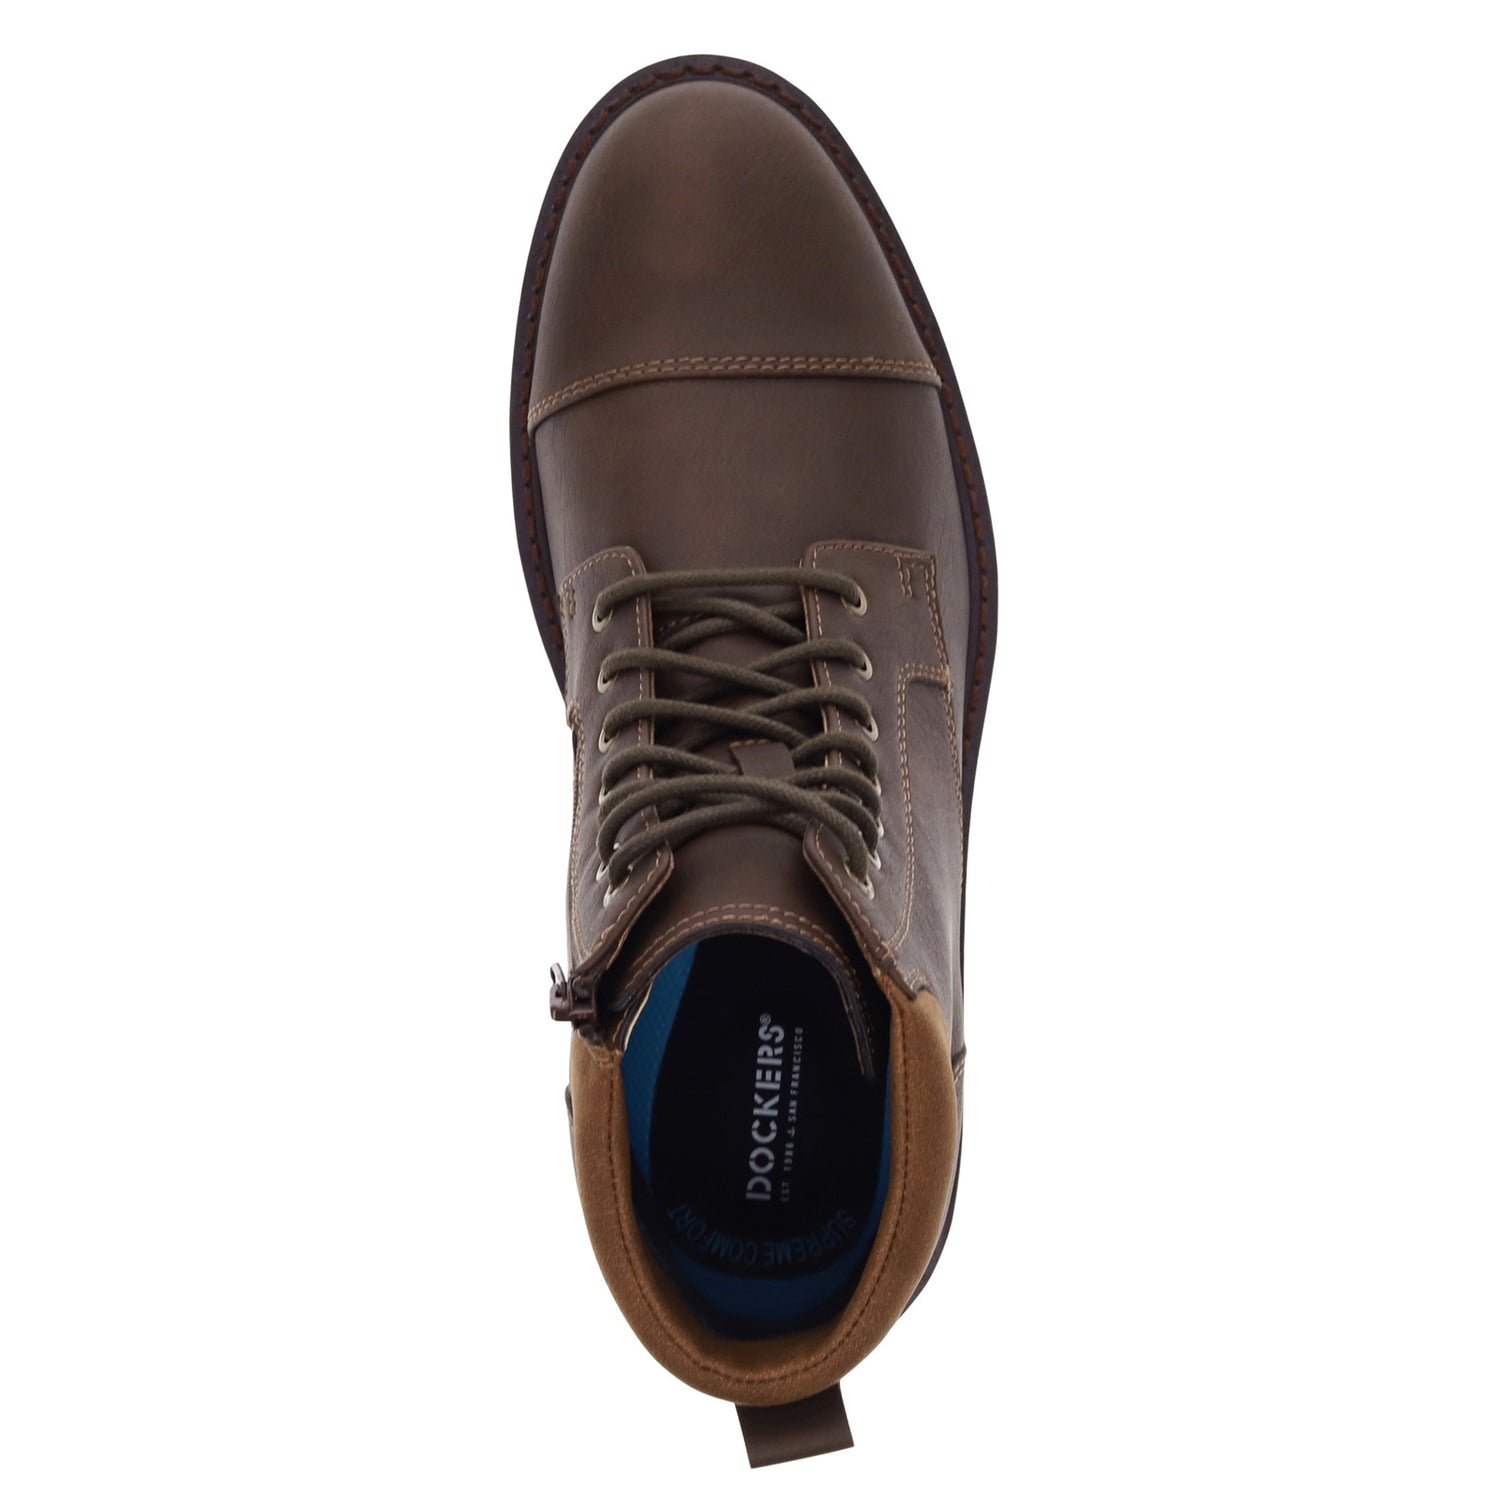 Peltz Shoes  Men's Dockers Dudley Boot Dark Brown 90-37638